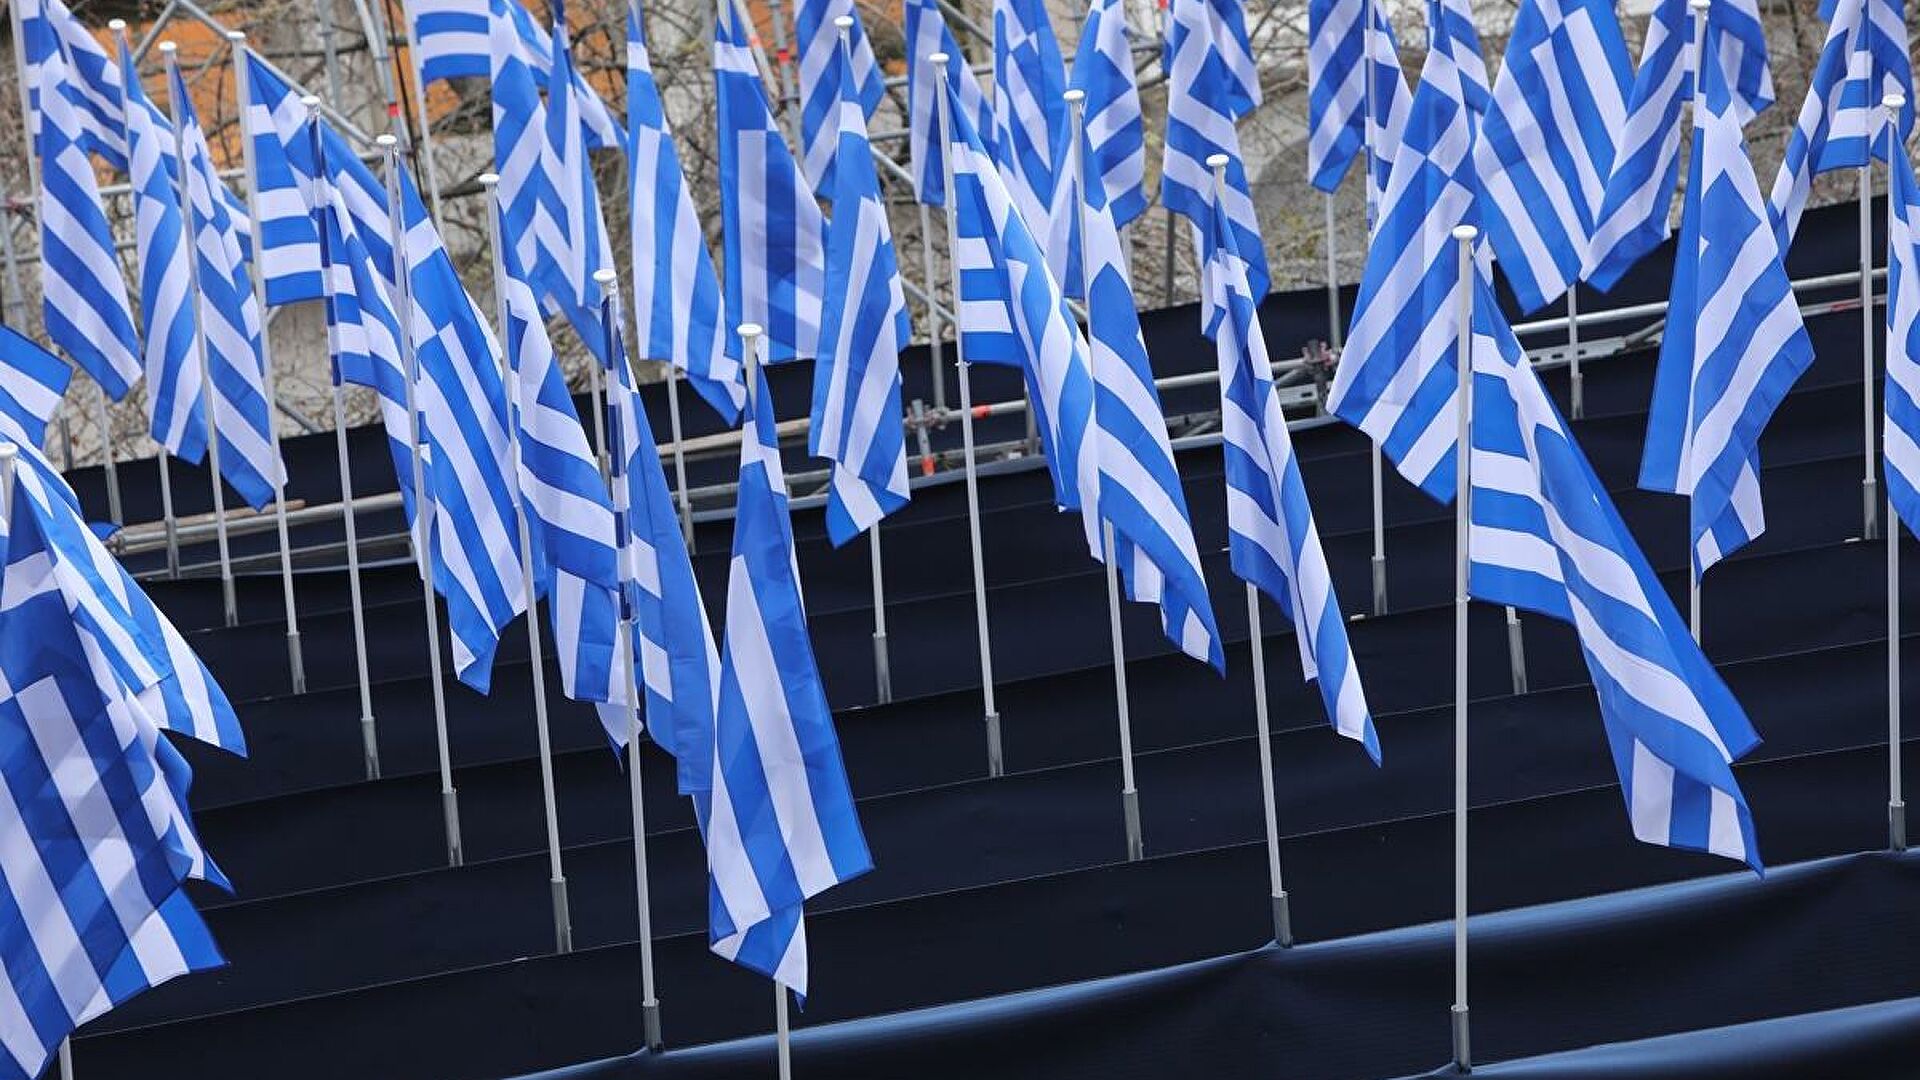 800 σημαίες και 400 θυρεοί στους δρόμους της Αθήνας για την 25η Μαρτίου (φωτό)